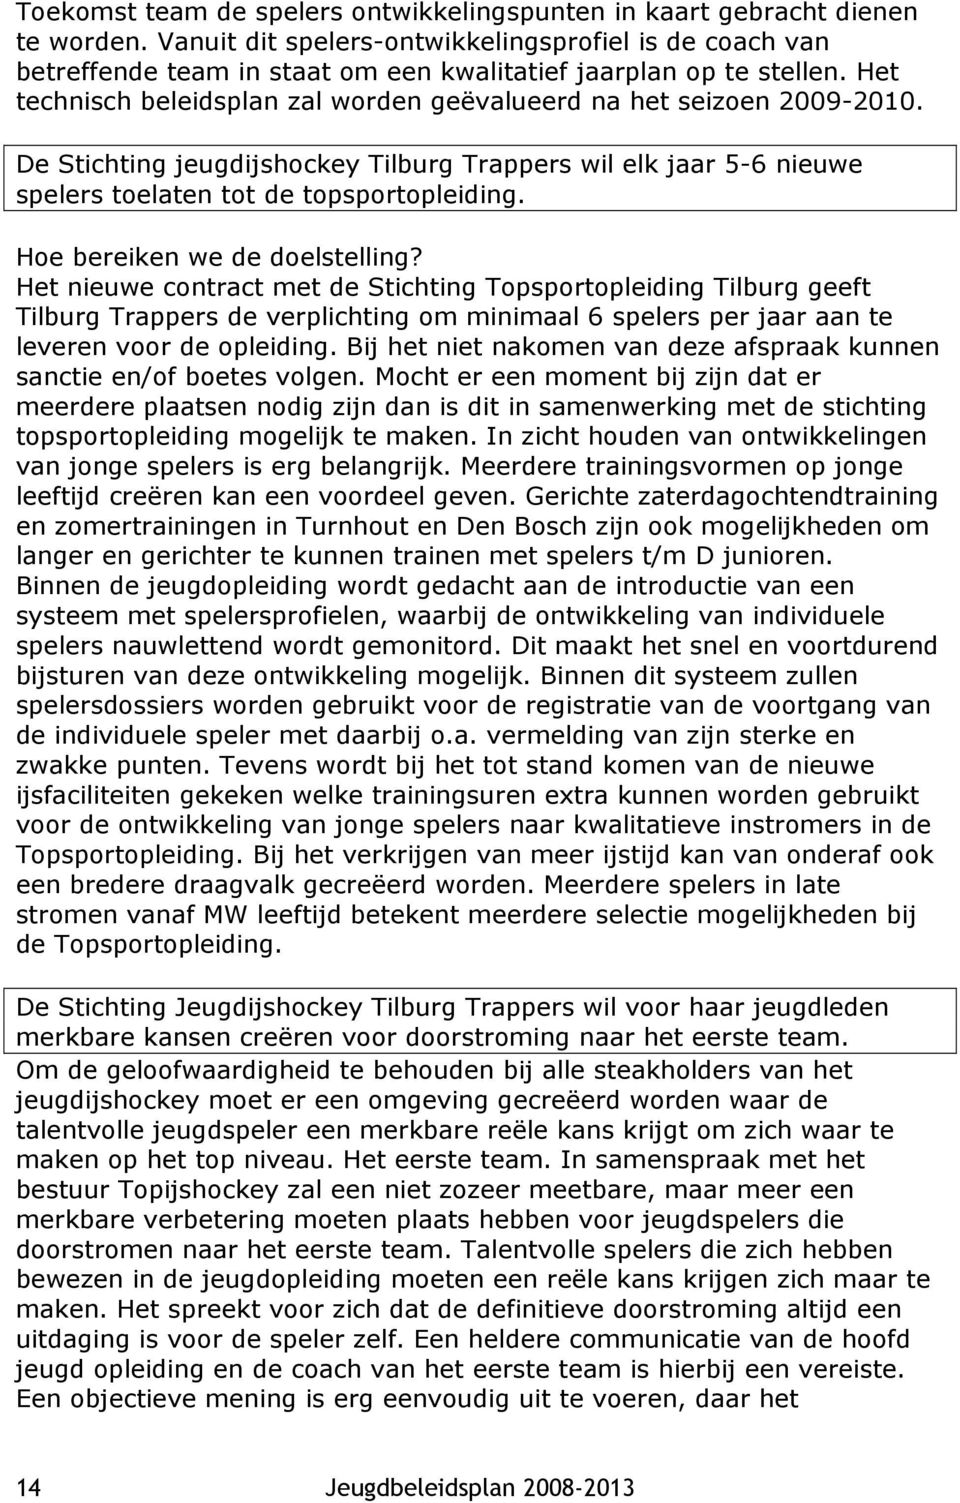 De Stichting jeugdijshockey Tilburg Trappers wil elk jaar 5-6 nieuwe spelers toelaten tot de topsportopleiding.